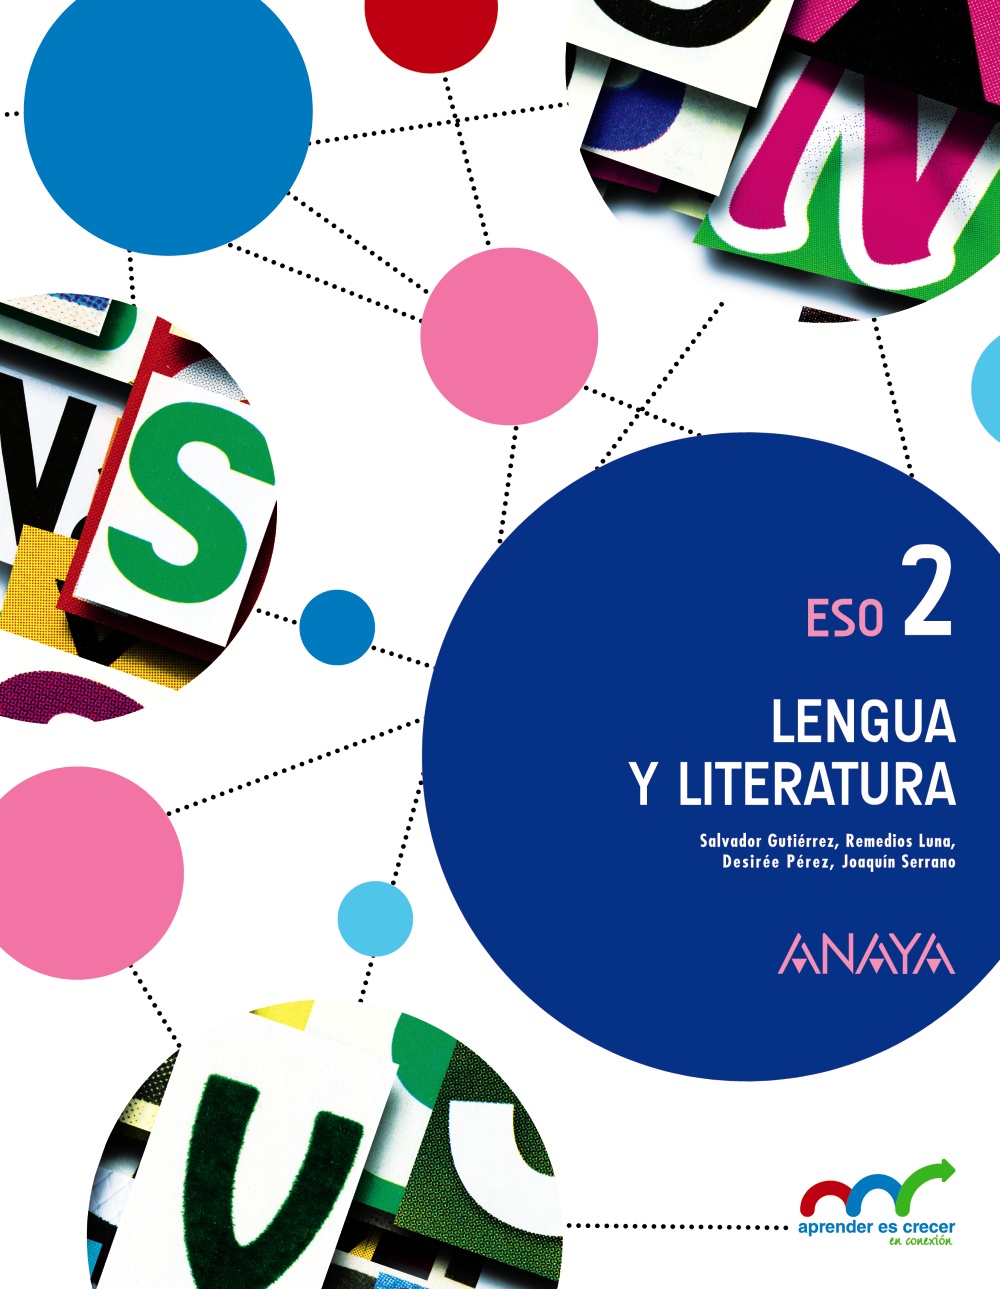 Solucionario Lengua y Literatura 2 ESO Anaya Aprender es Crecer PDF Ejercicios Resueltos-pdf